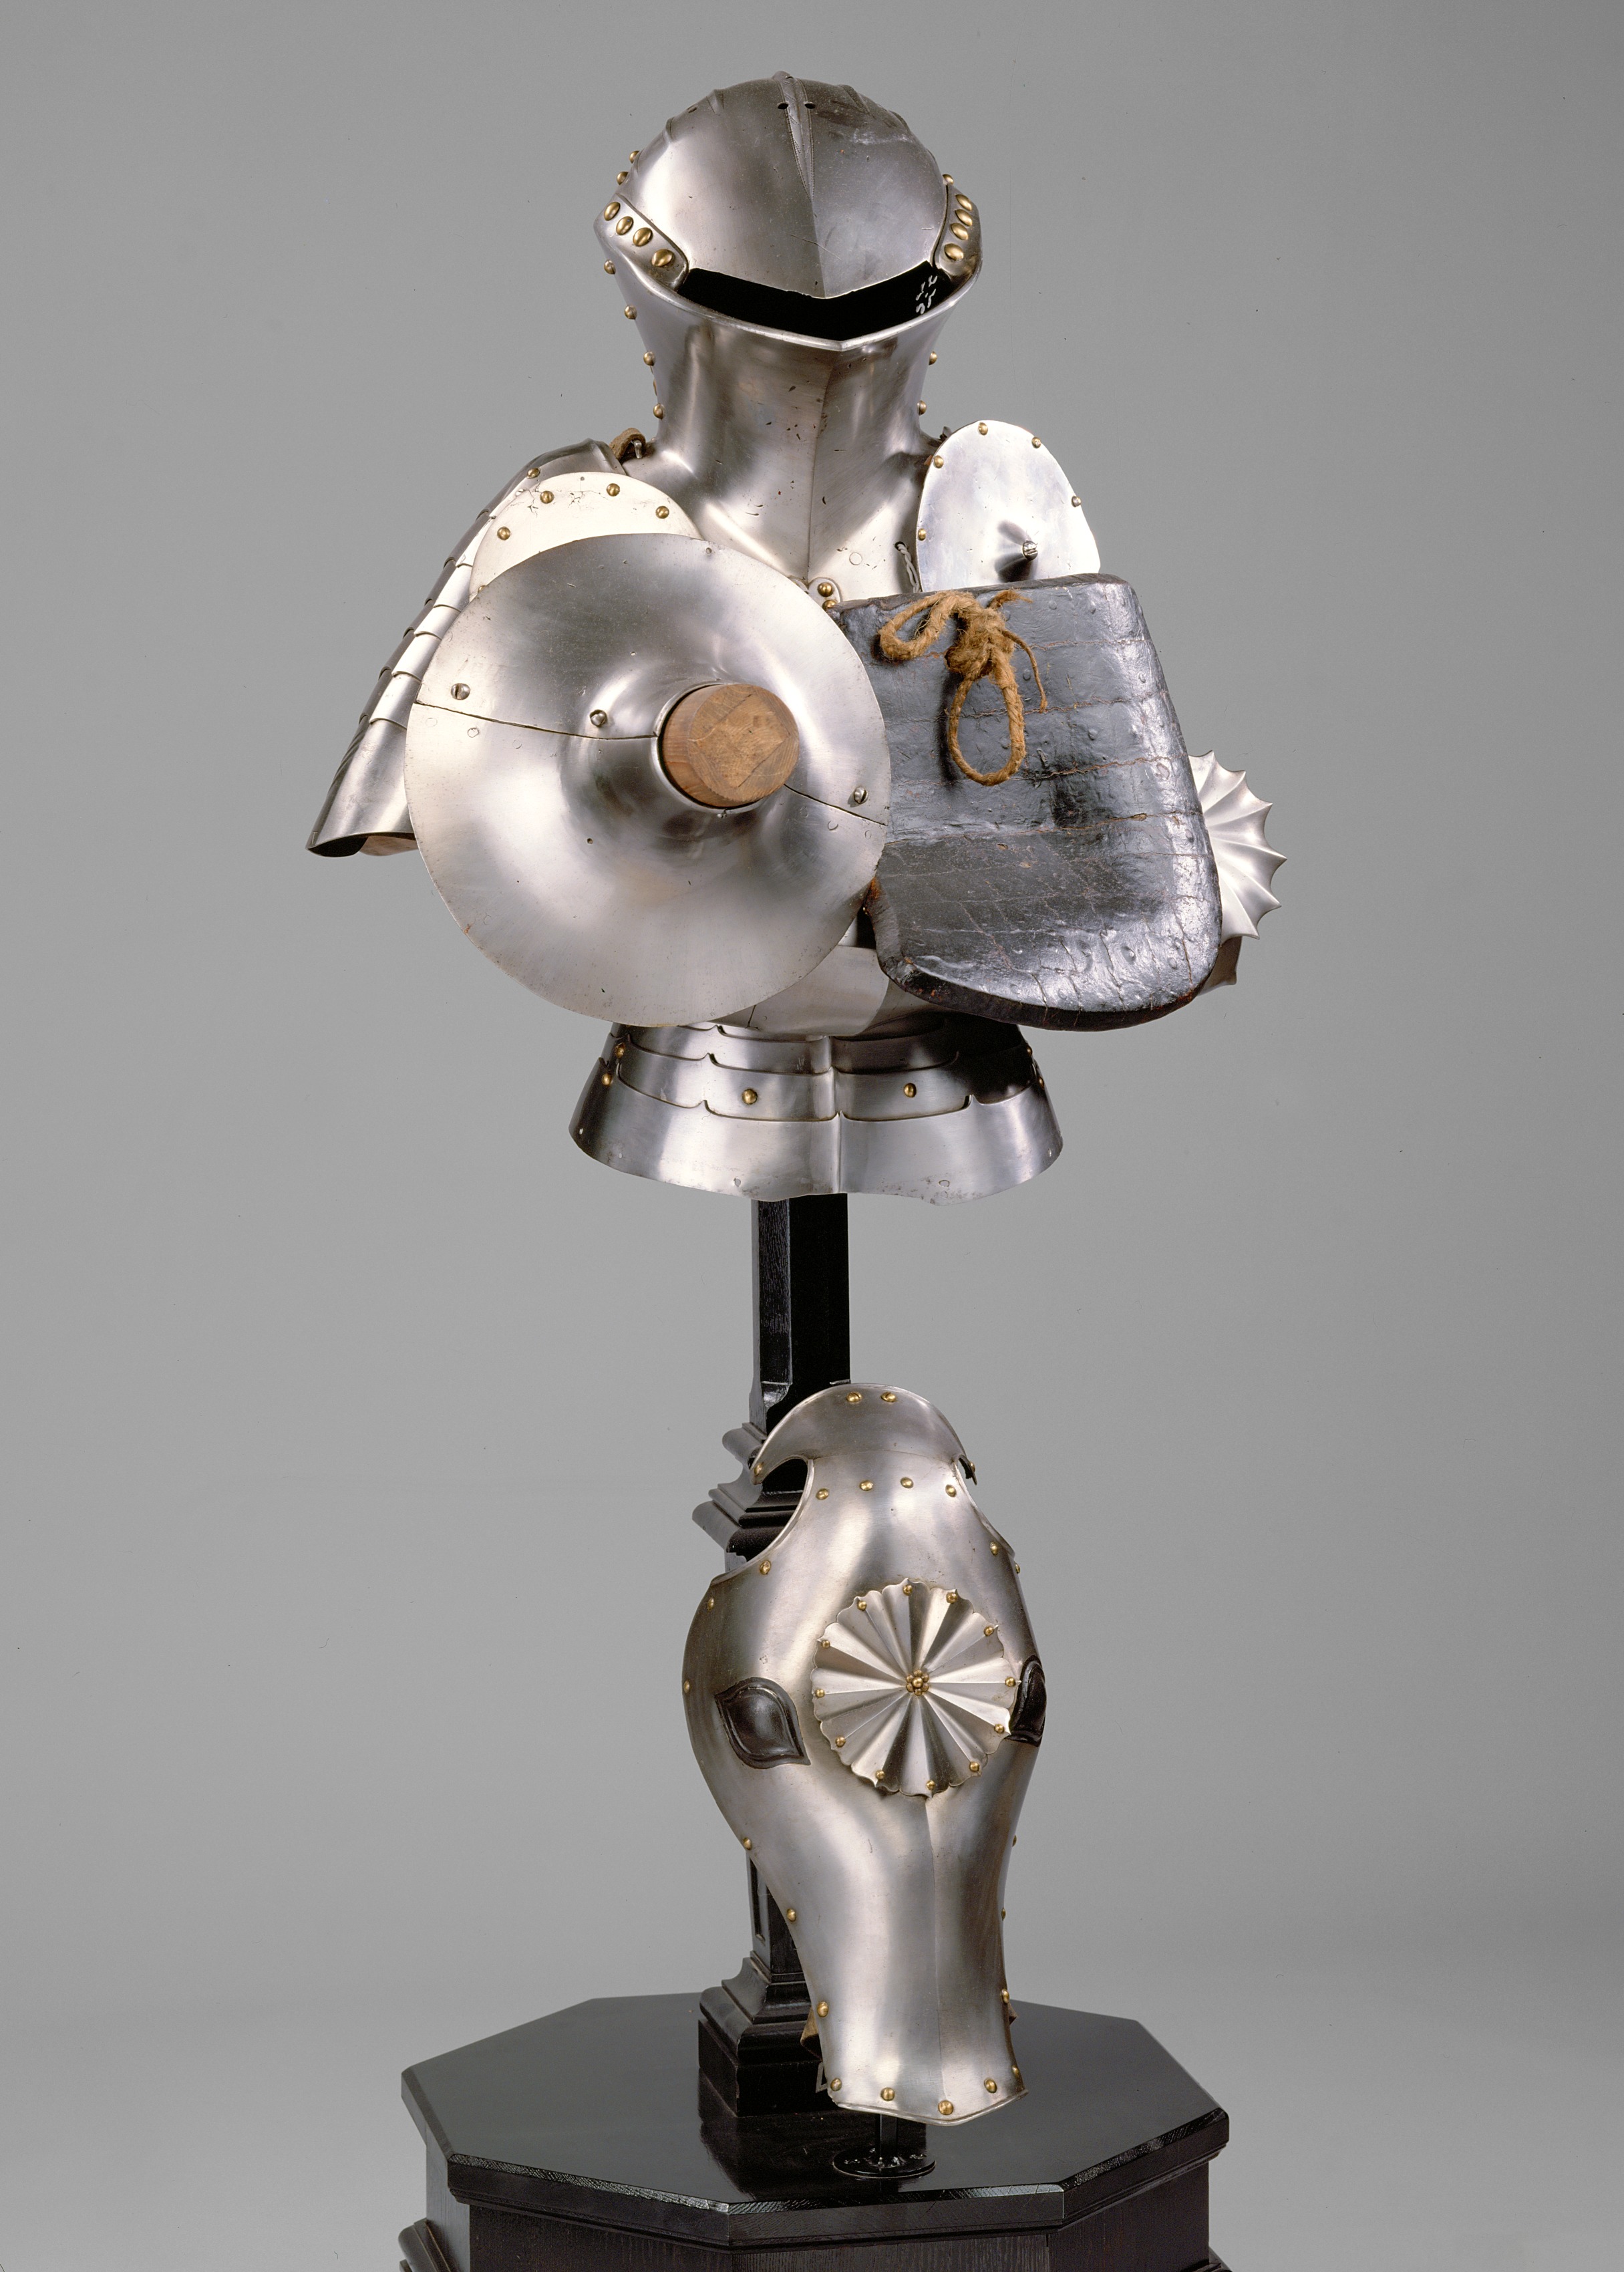 Heavy Jousting Armor (Stechzeug) of Holy Roman Emperor Maximilian I (1459–1519)